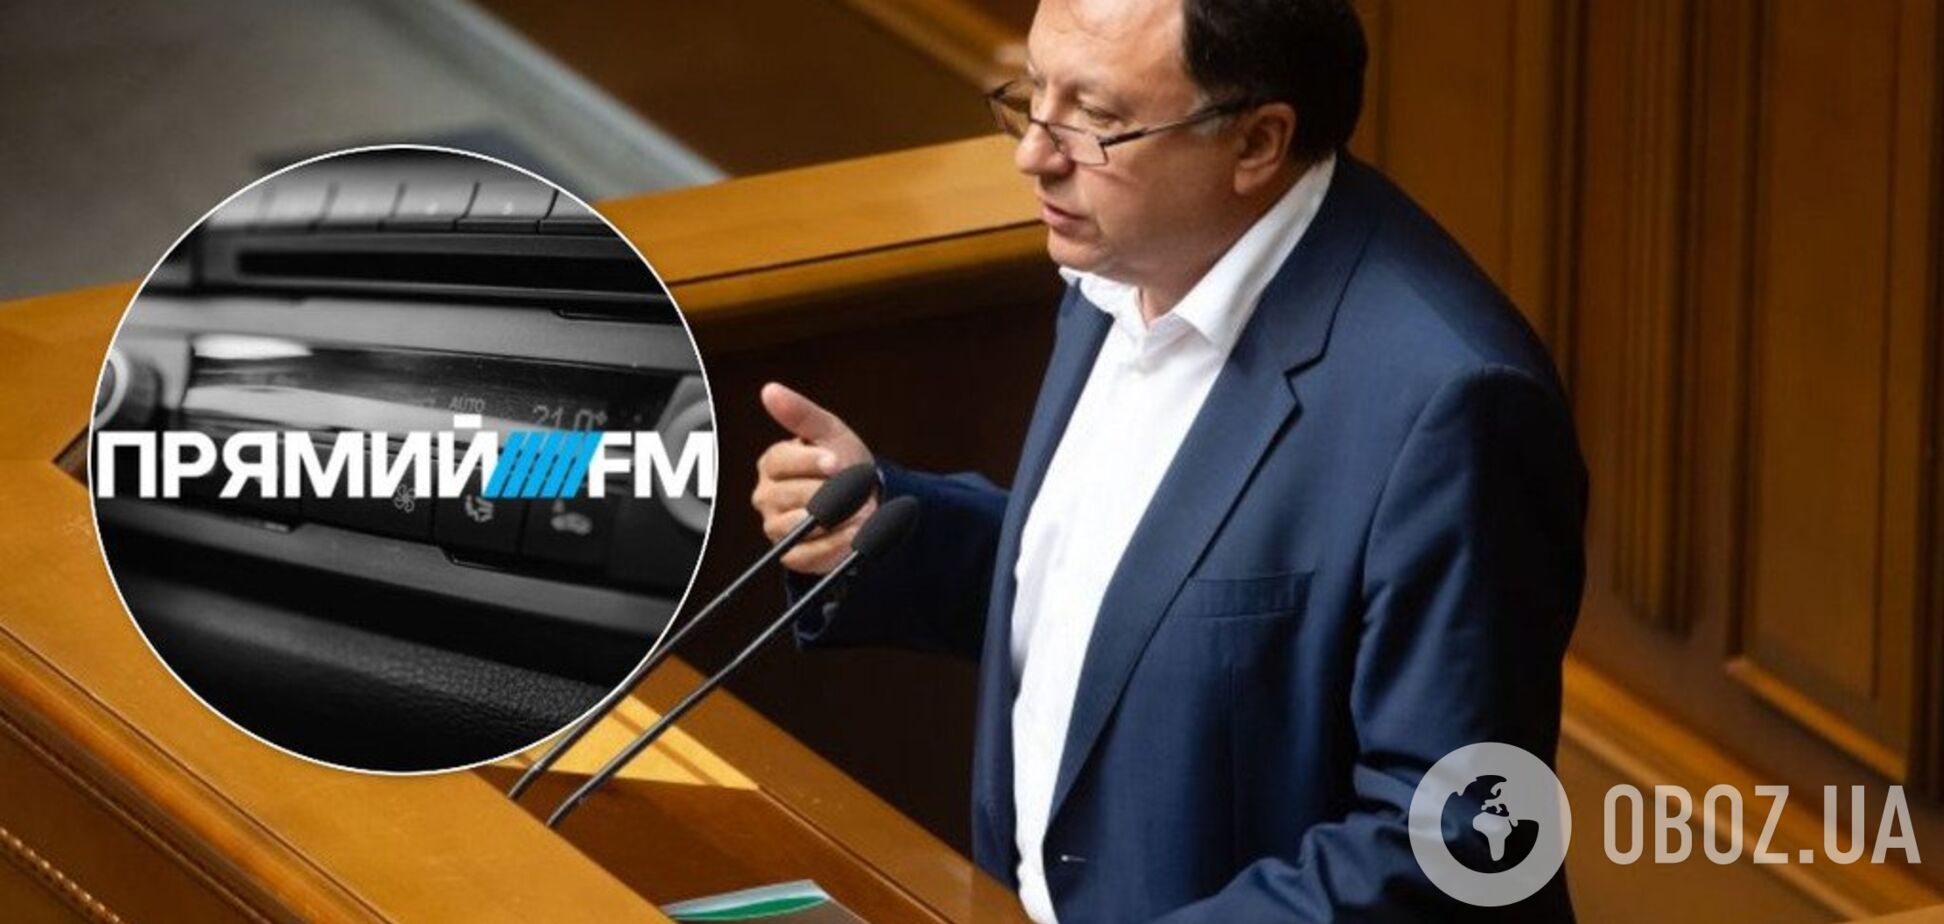 Нацрада хоче позбавити ліцензії 'Прямий FM': у Порошенка забили на сполох